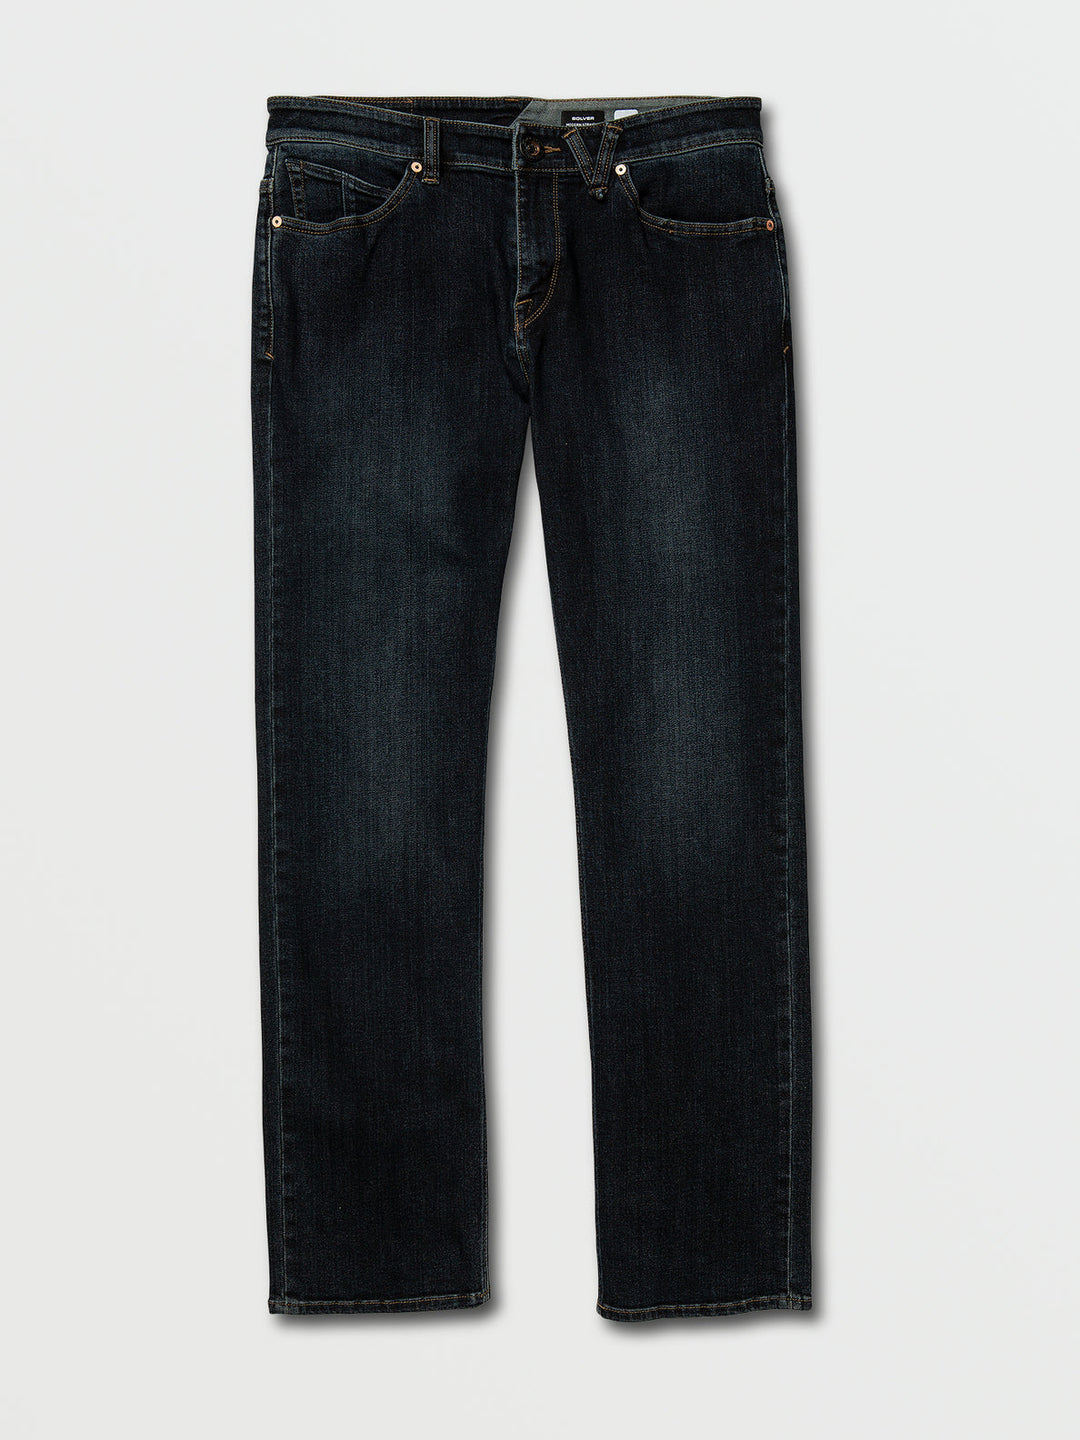 Volcom Solver Modern Fit Jeans - Vintage Blue - Sun Diego Boardshop